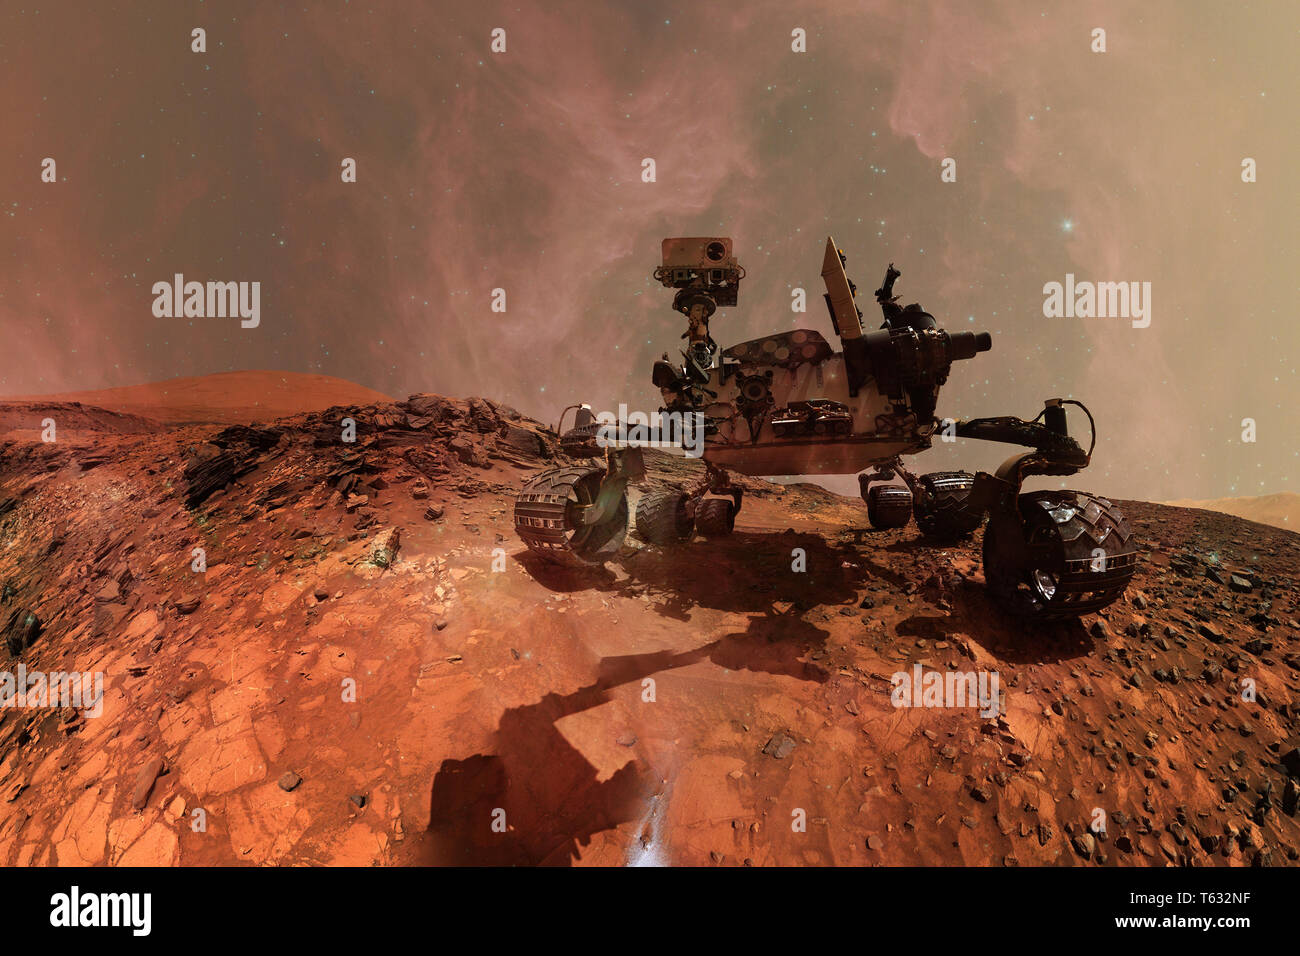 Neugier Mars Rover die Erkundung der Oberfläche des Planeten Mars. Elemente dieses Bild von der NASA eingerichtet. Stockfoto